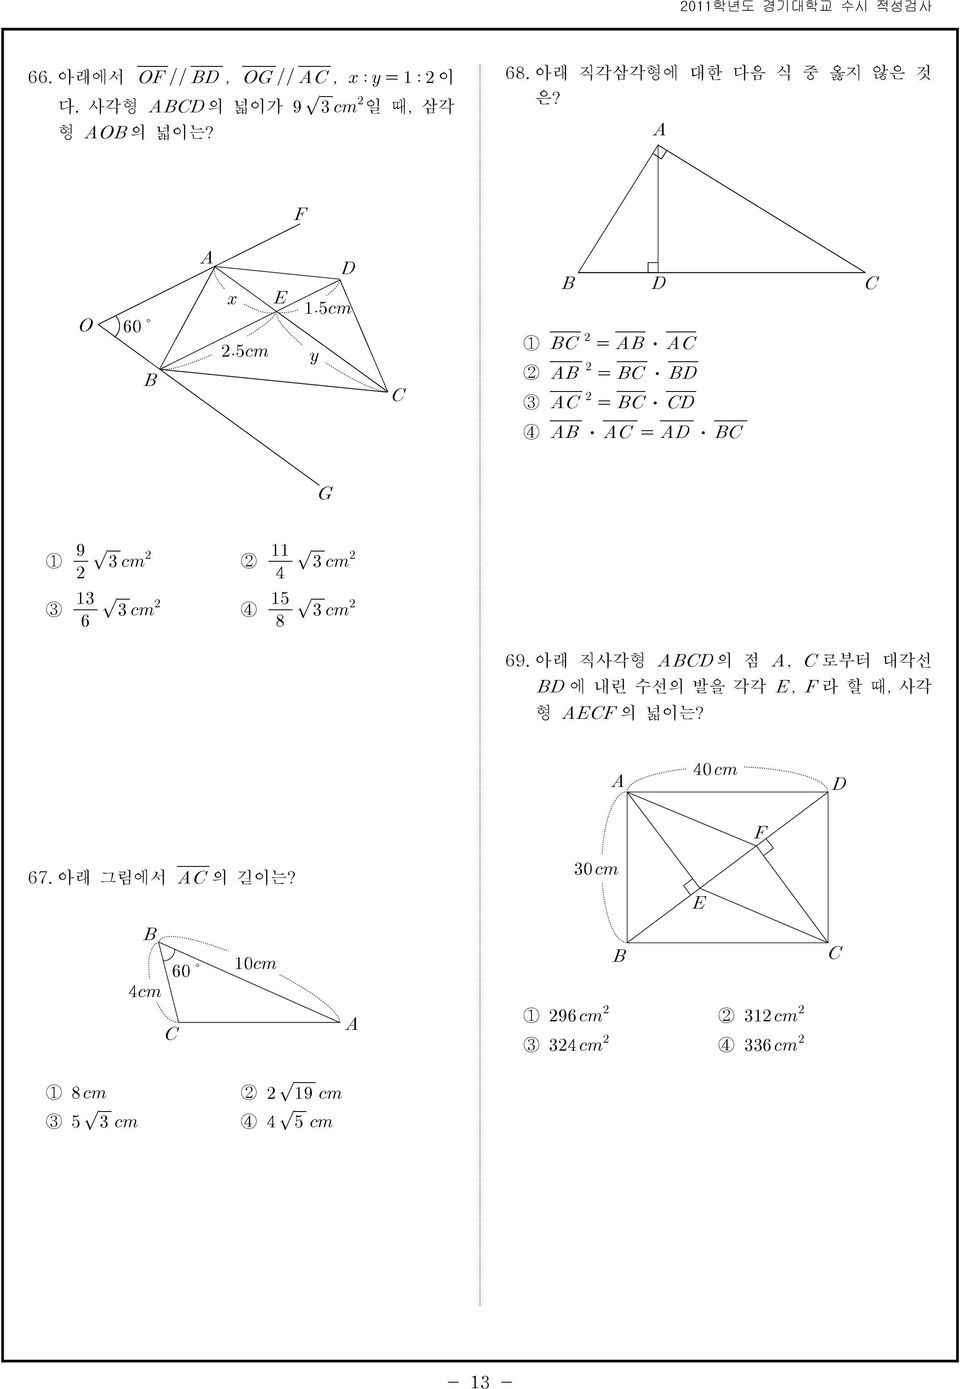 아래 직각삼각형에 대한 다음 식 중 옳지 않은 것 은? 1 2 3 4 1 3 2 4 69.